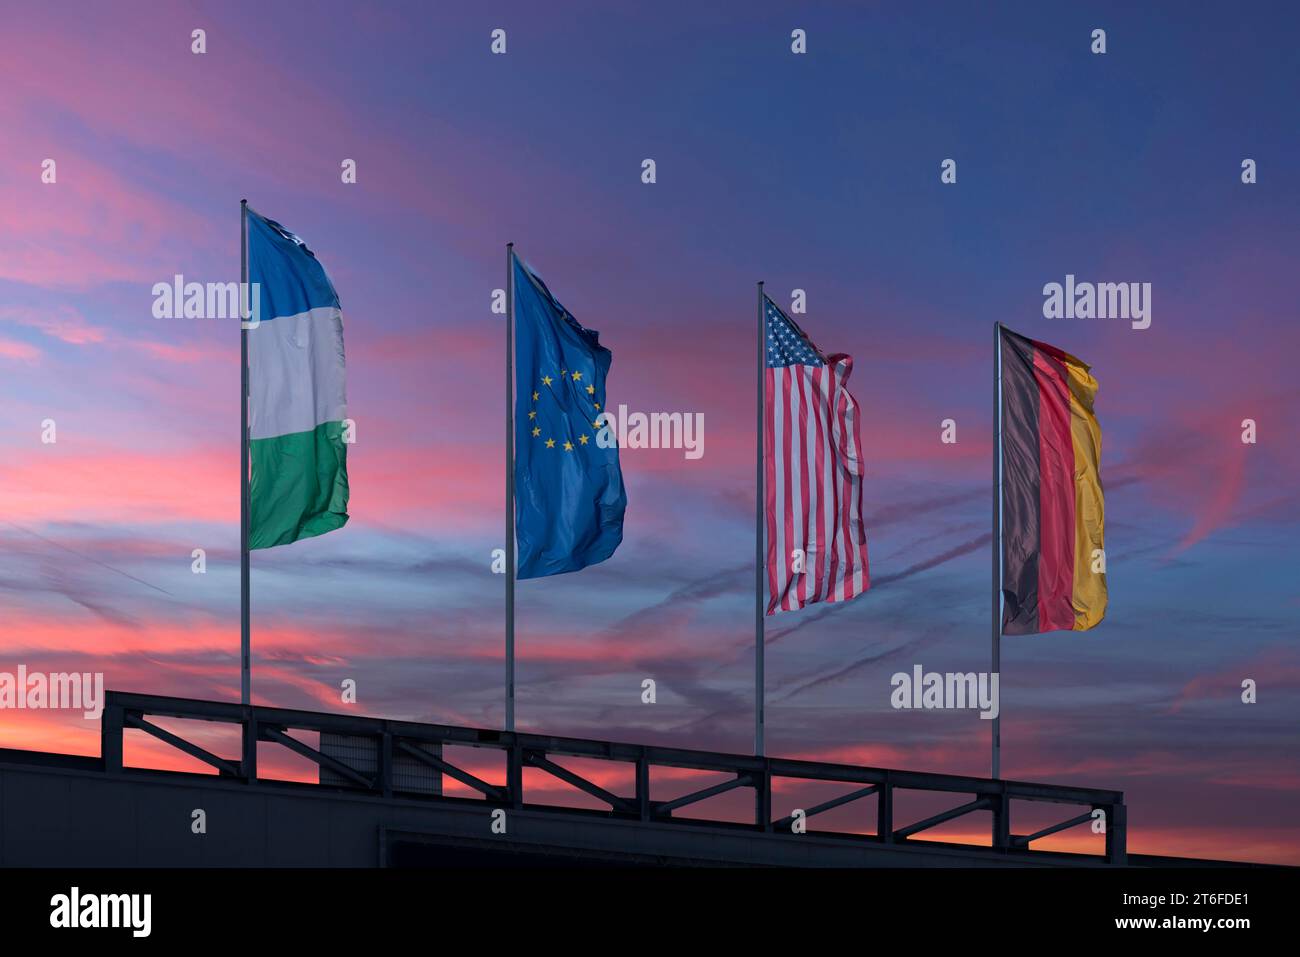 Brandissant des drapeaux dans le ciel du soir, Rhénanie-Palatinat, Allemagne Banque D'Images